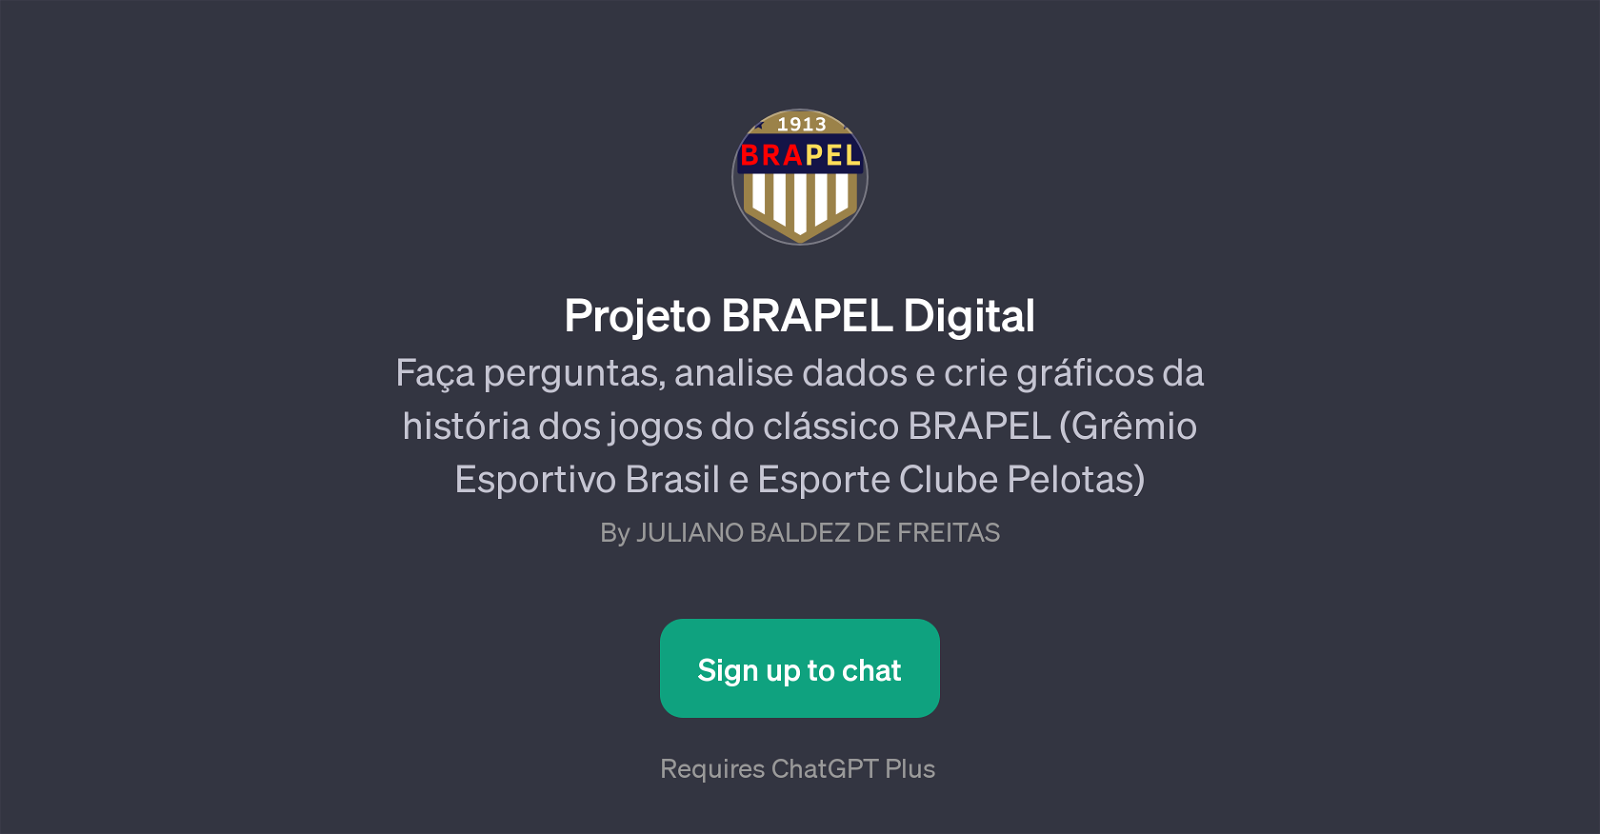 Projeto BRAPEL Digital website